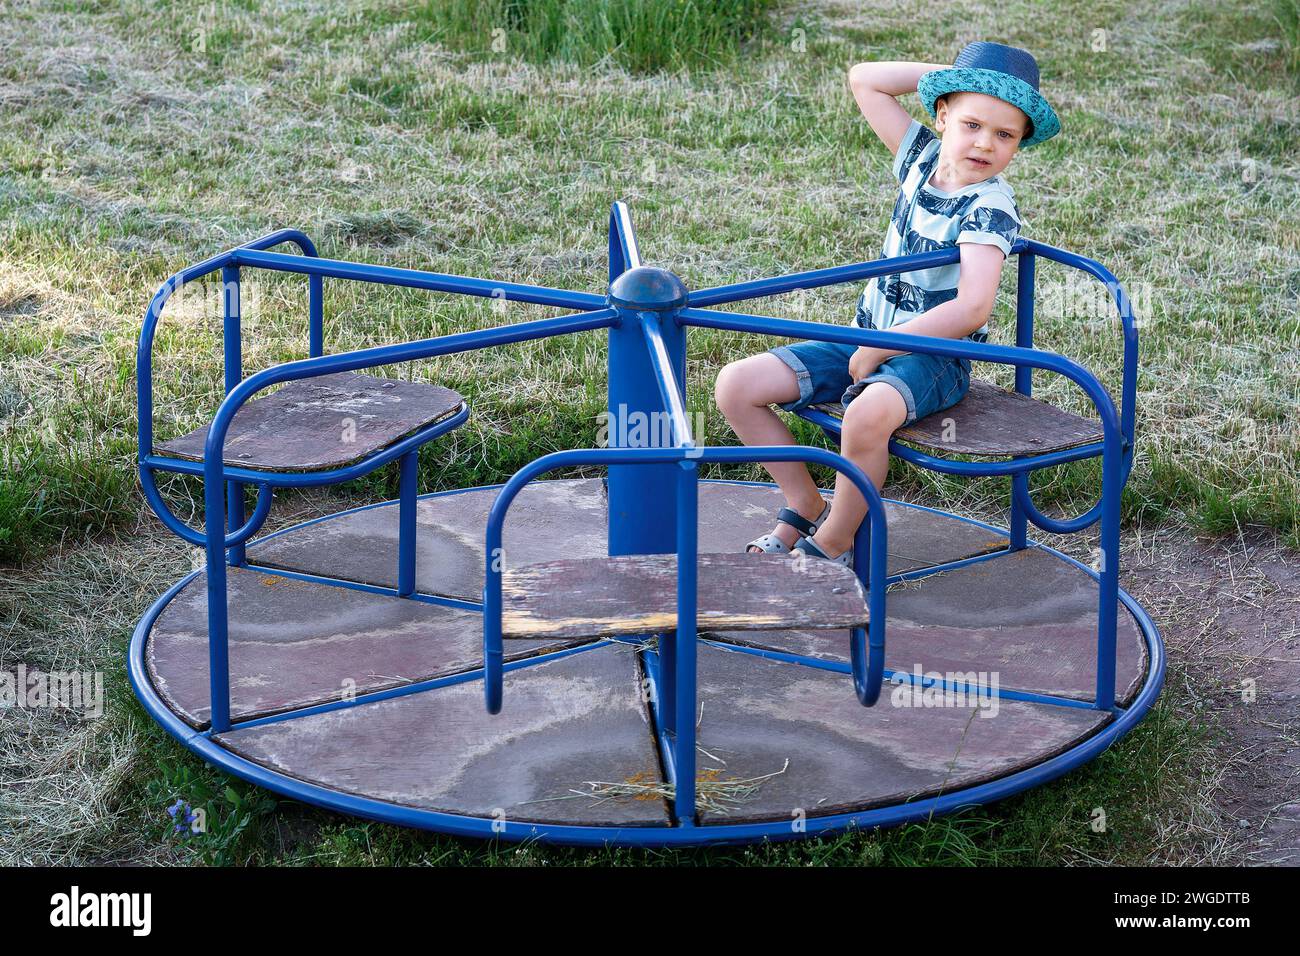 Ein Kinderspaß dreht sich auf dem Spielplatz und ein süßer Junge sitzt und ruht sich darauf aus. Stockfoto